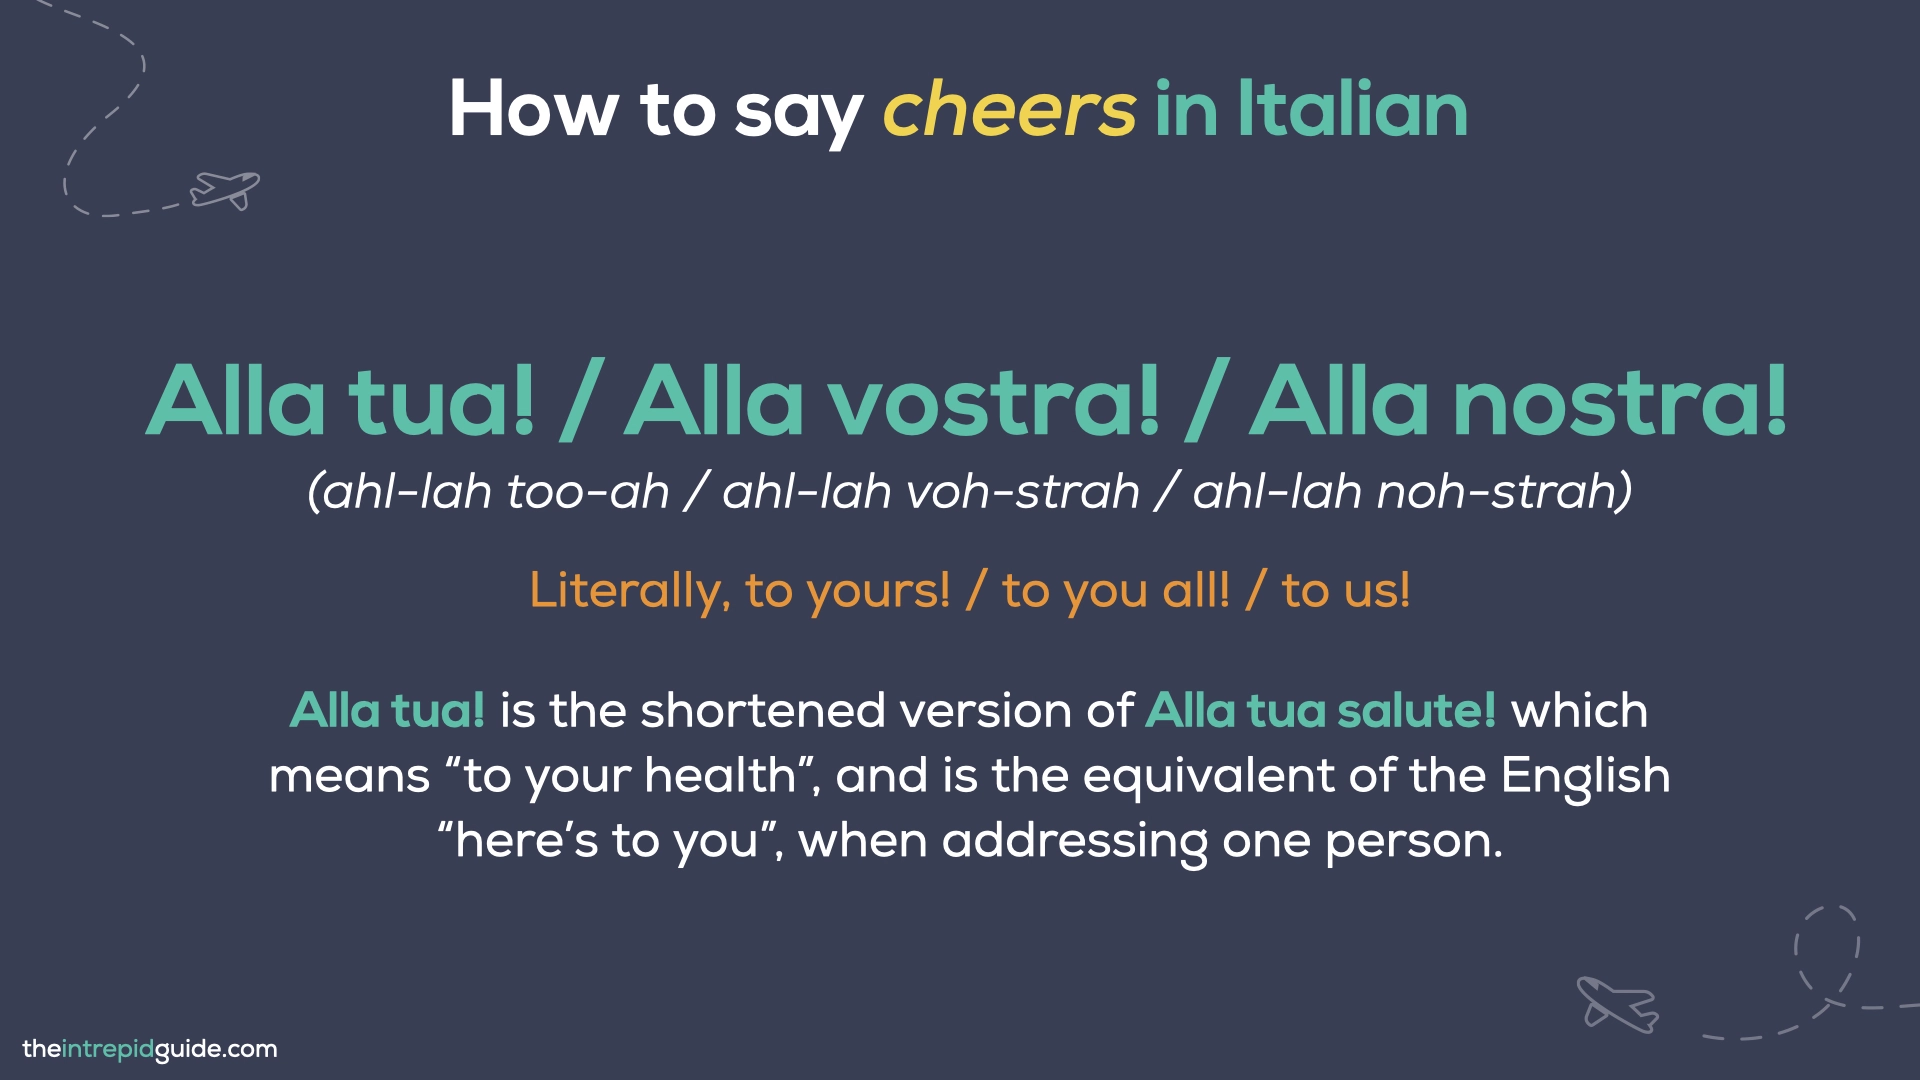 How to say cheers in Italian - Alla tua, Alla vostra, Alla nostra